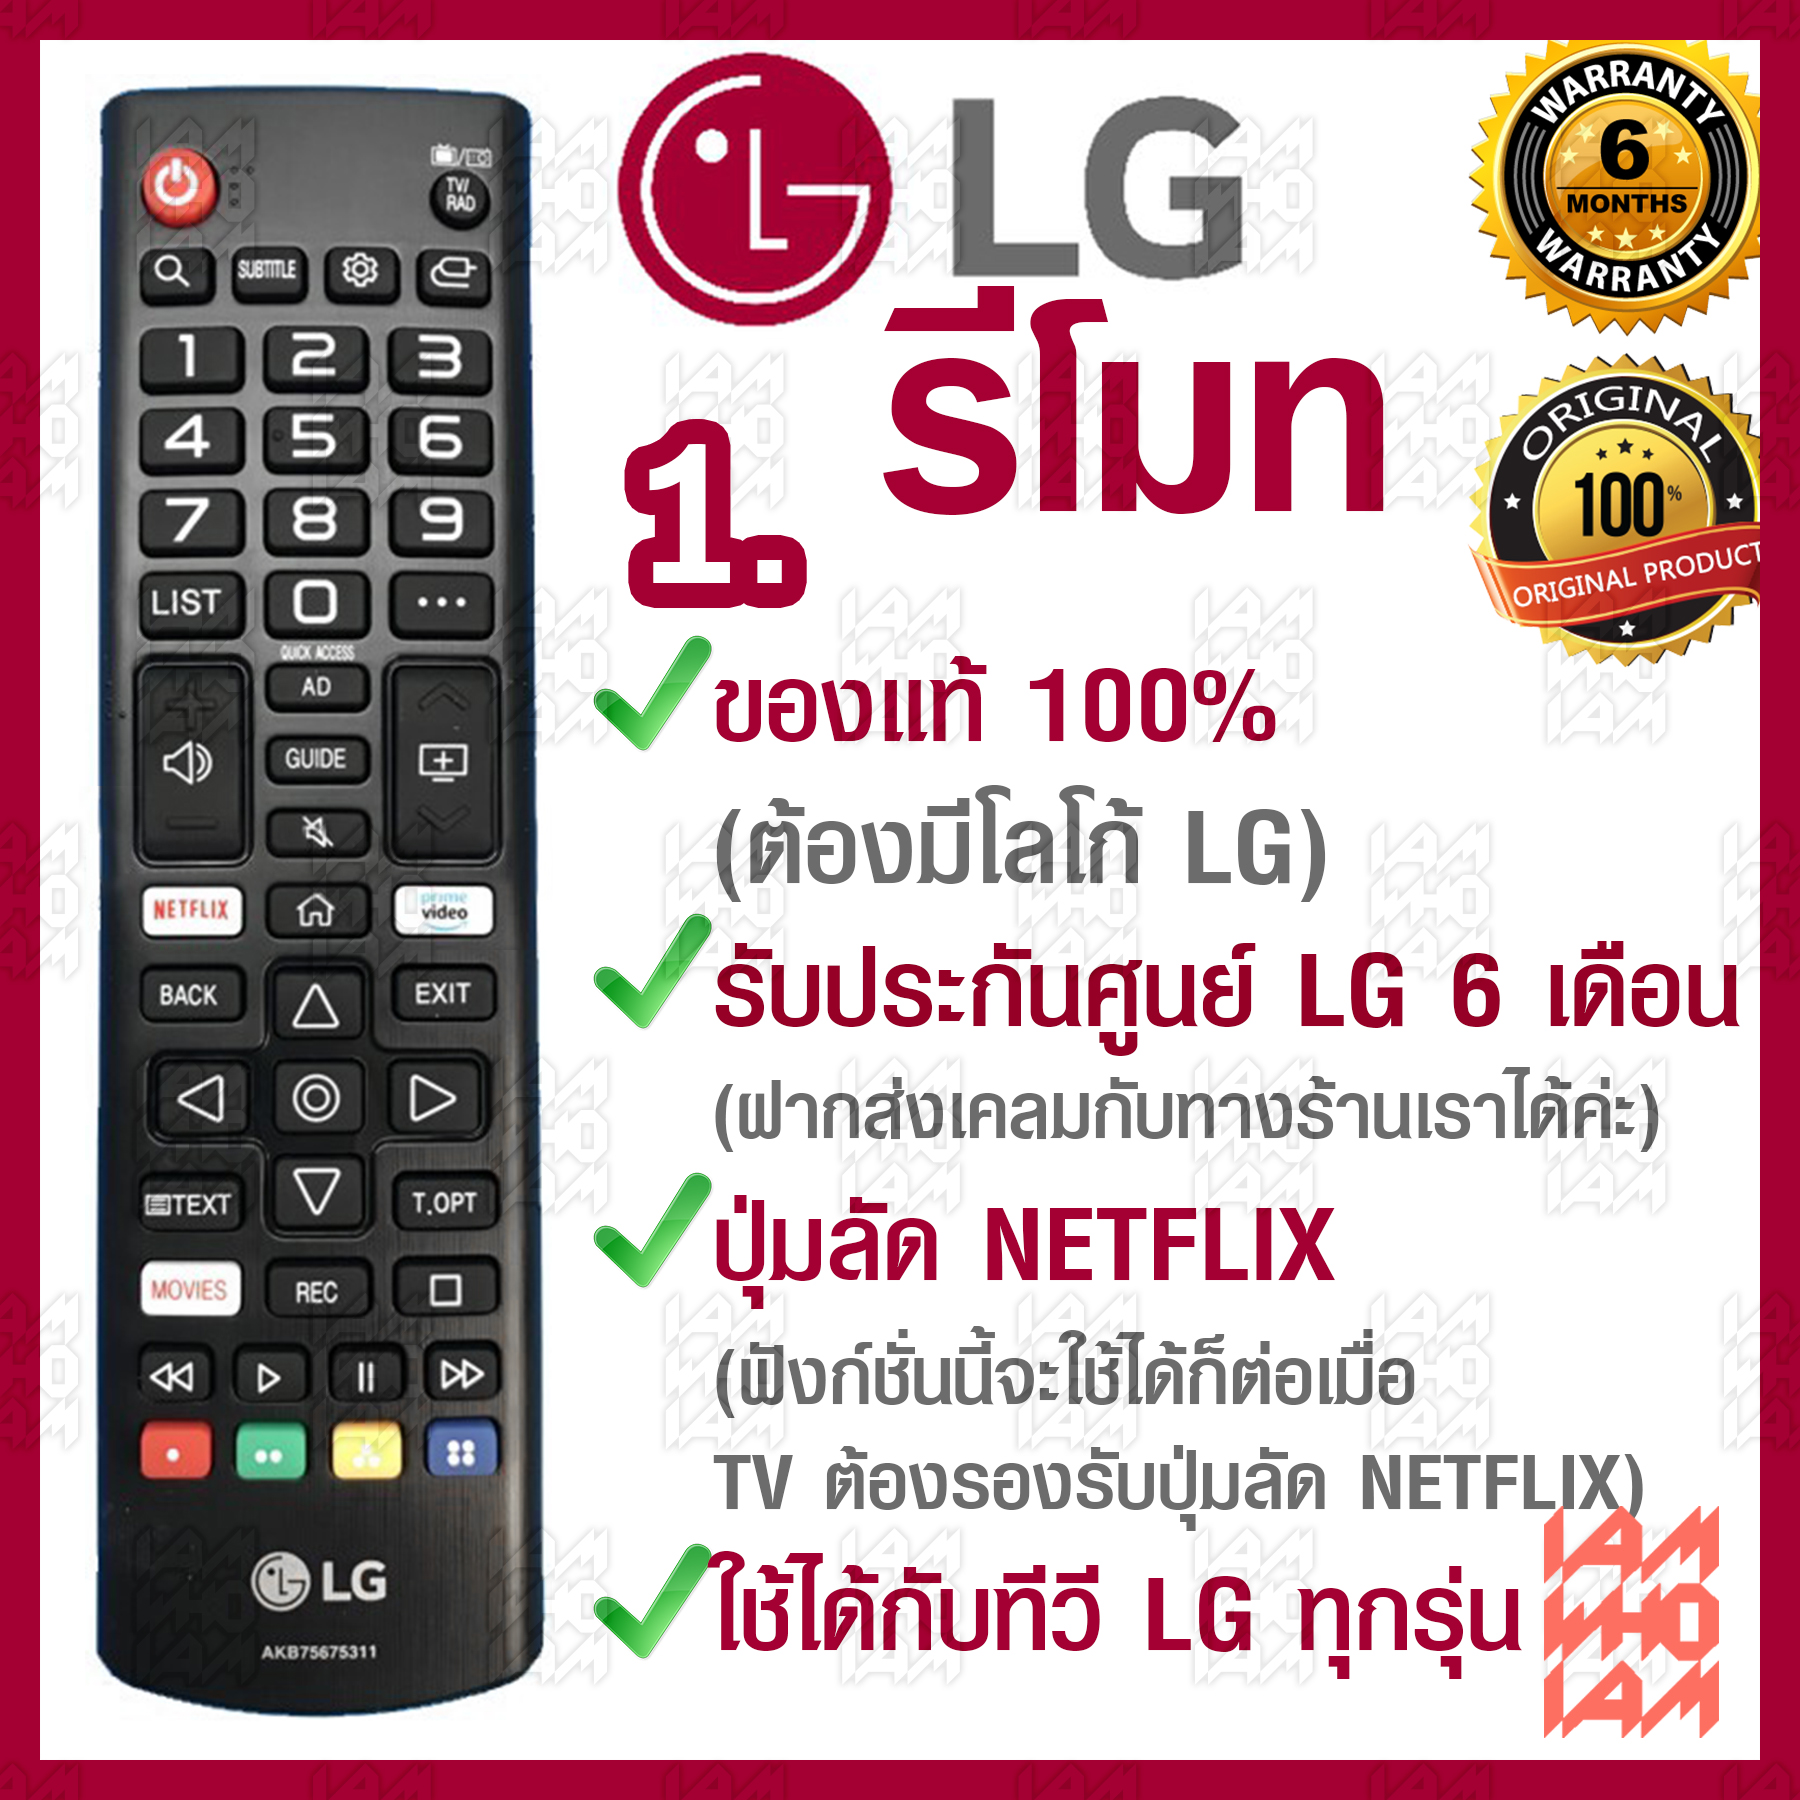 LG รีโมท ทีวี ใช้ได้กับทีวี LG ทุกรุ่น / ของแท้ รับประกันศูนย์ / มี 3 รุ่น / 1.มีปุ่ม Netflix / 2.มีปุ่ม 3D / 3.มีปุ่ม3D(รีโมททรงยาว/รุ่นเก่า)